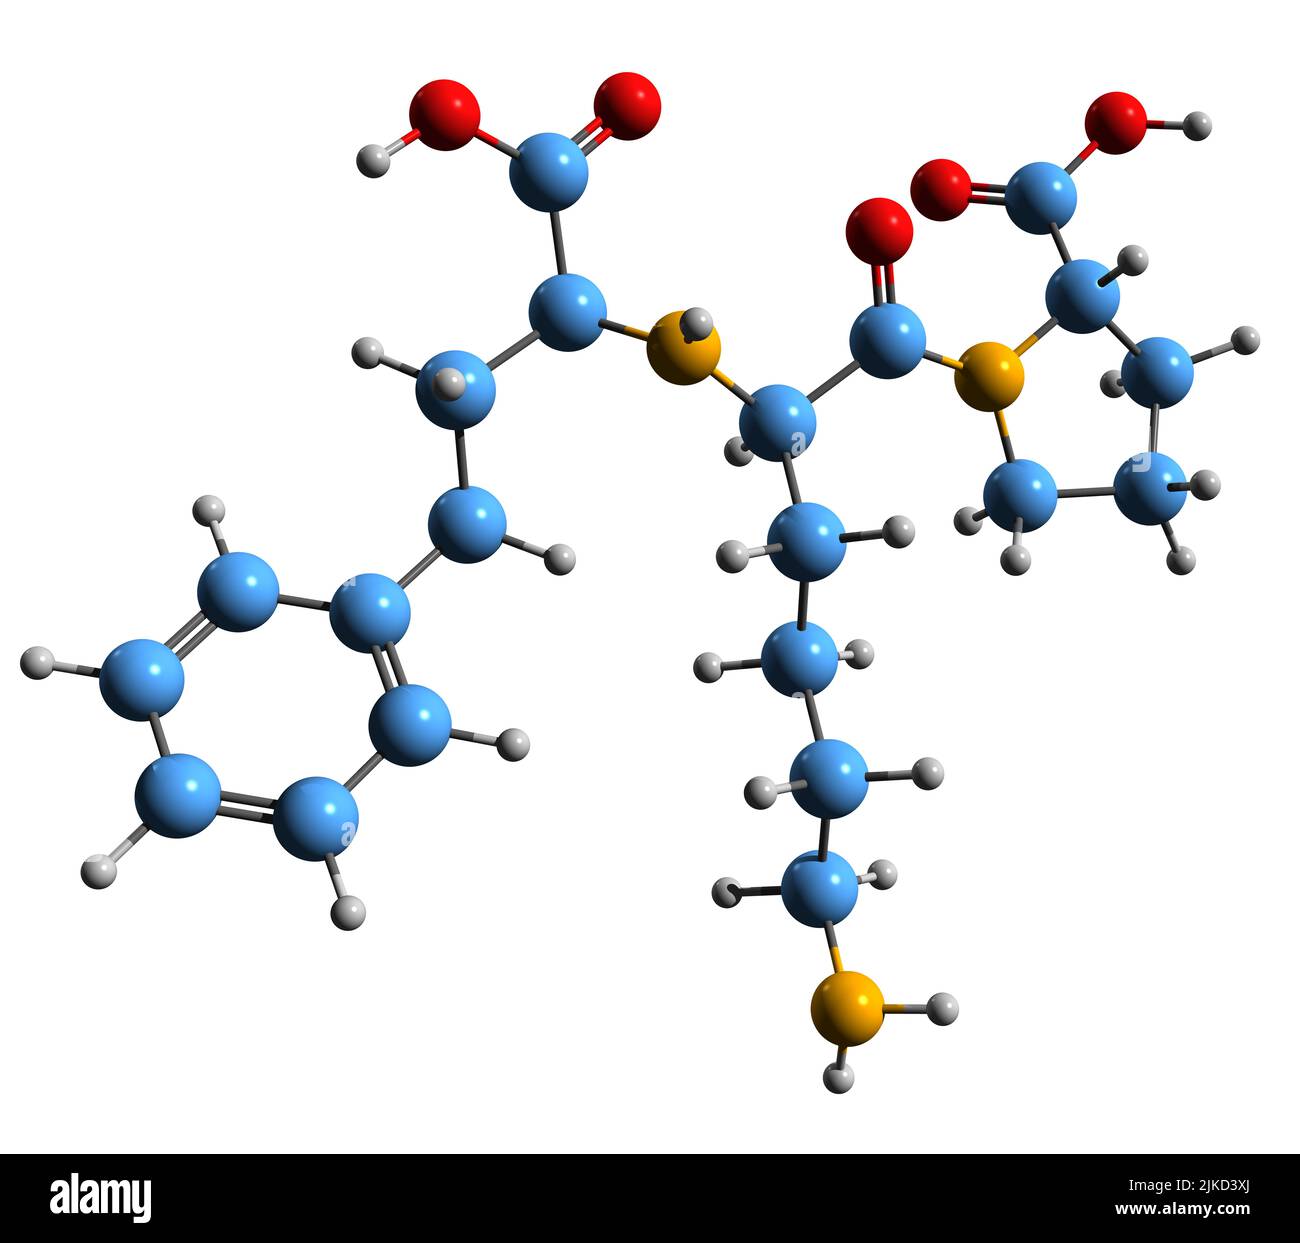 3D Bild der Skelettformel von Lisinopril - molekulare chemische Struktur des Angiotensin-konvertierenden Enzymhemmers, isoliert auf weißem Hintergrund Stockfoto